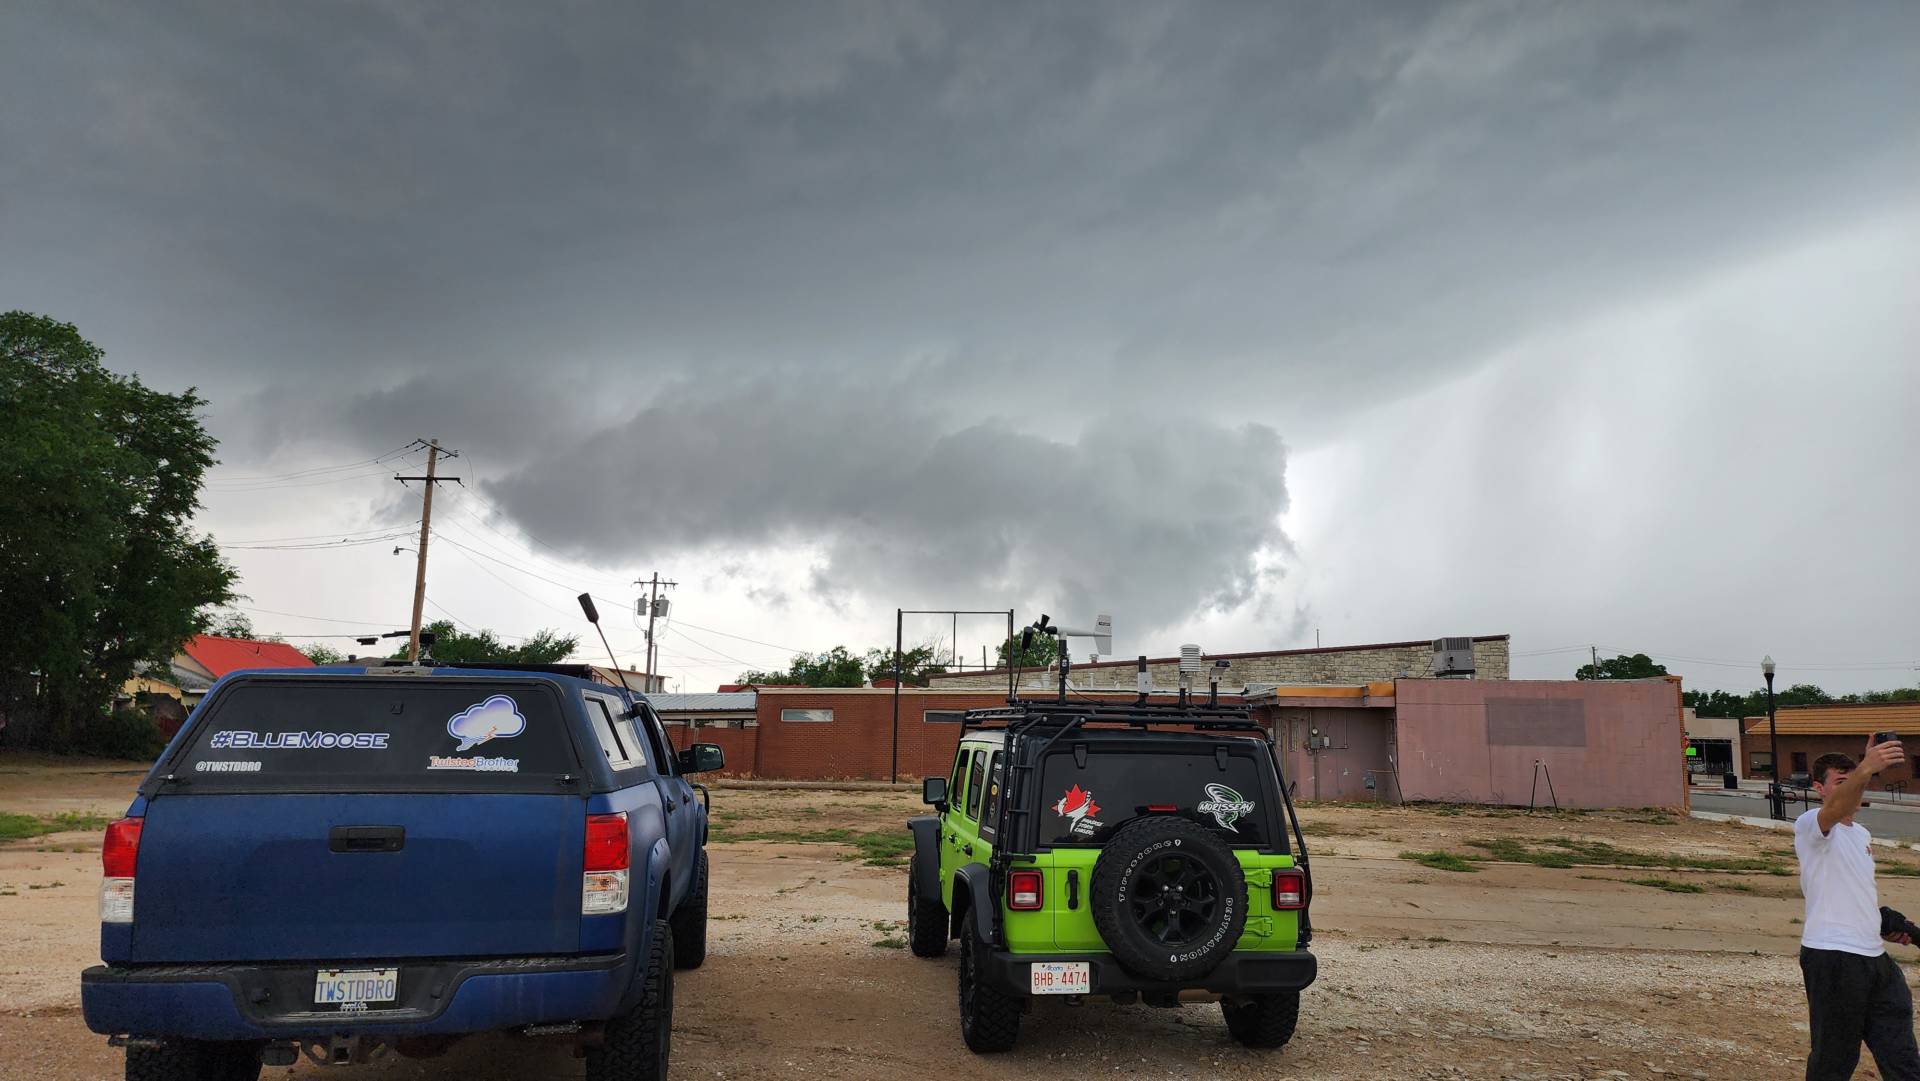 Wall cloud forming west of Waynoka, Oklahoma 04:49 PM @NWSNorman @NWStulsa #okwx